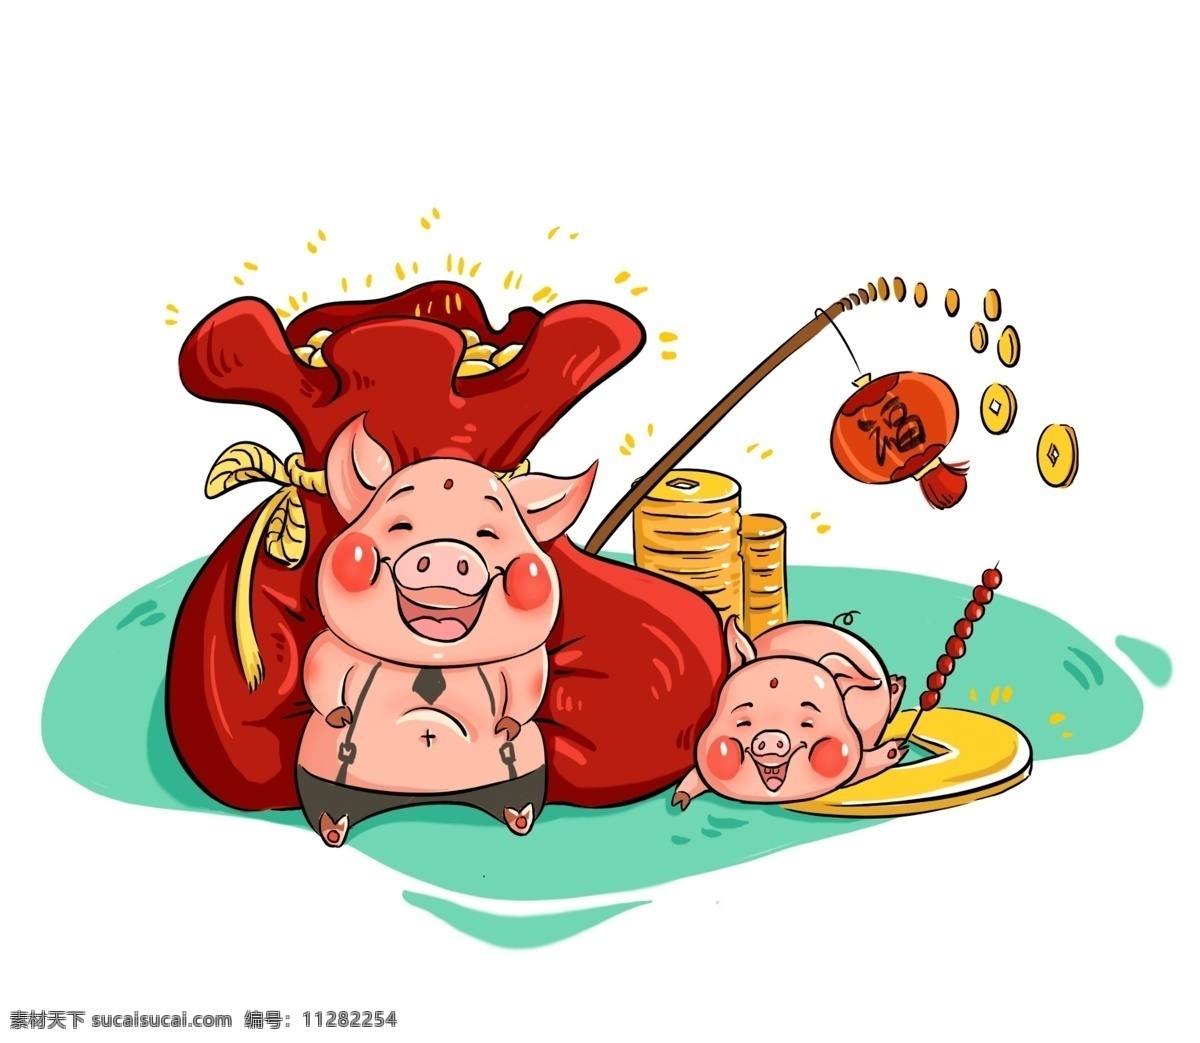 猪年 吉祥 猪 财 袋子 红色 吉祥猪猪 红灯笼 红色财富袋子 金钱 钱币 糖葫芦 调皮 可爱 手绘 卡通 免抠png